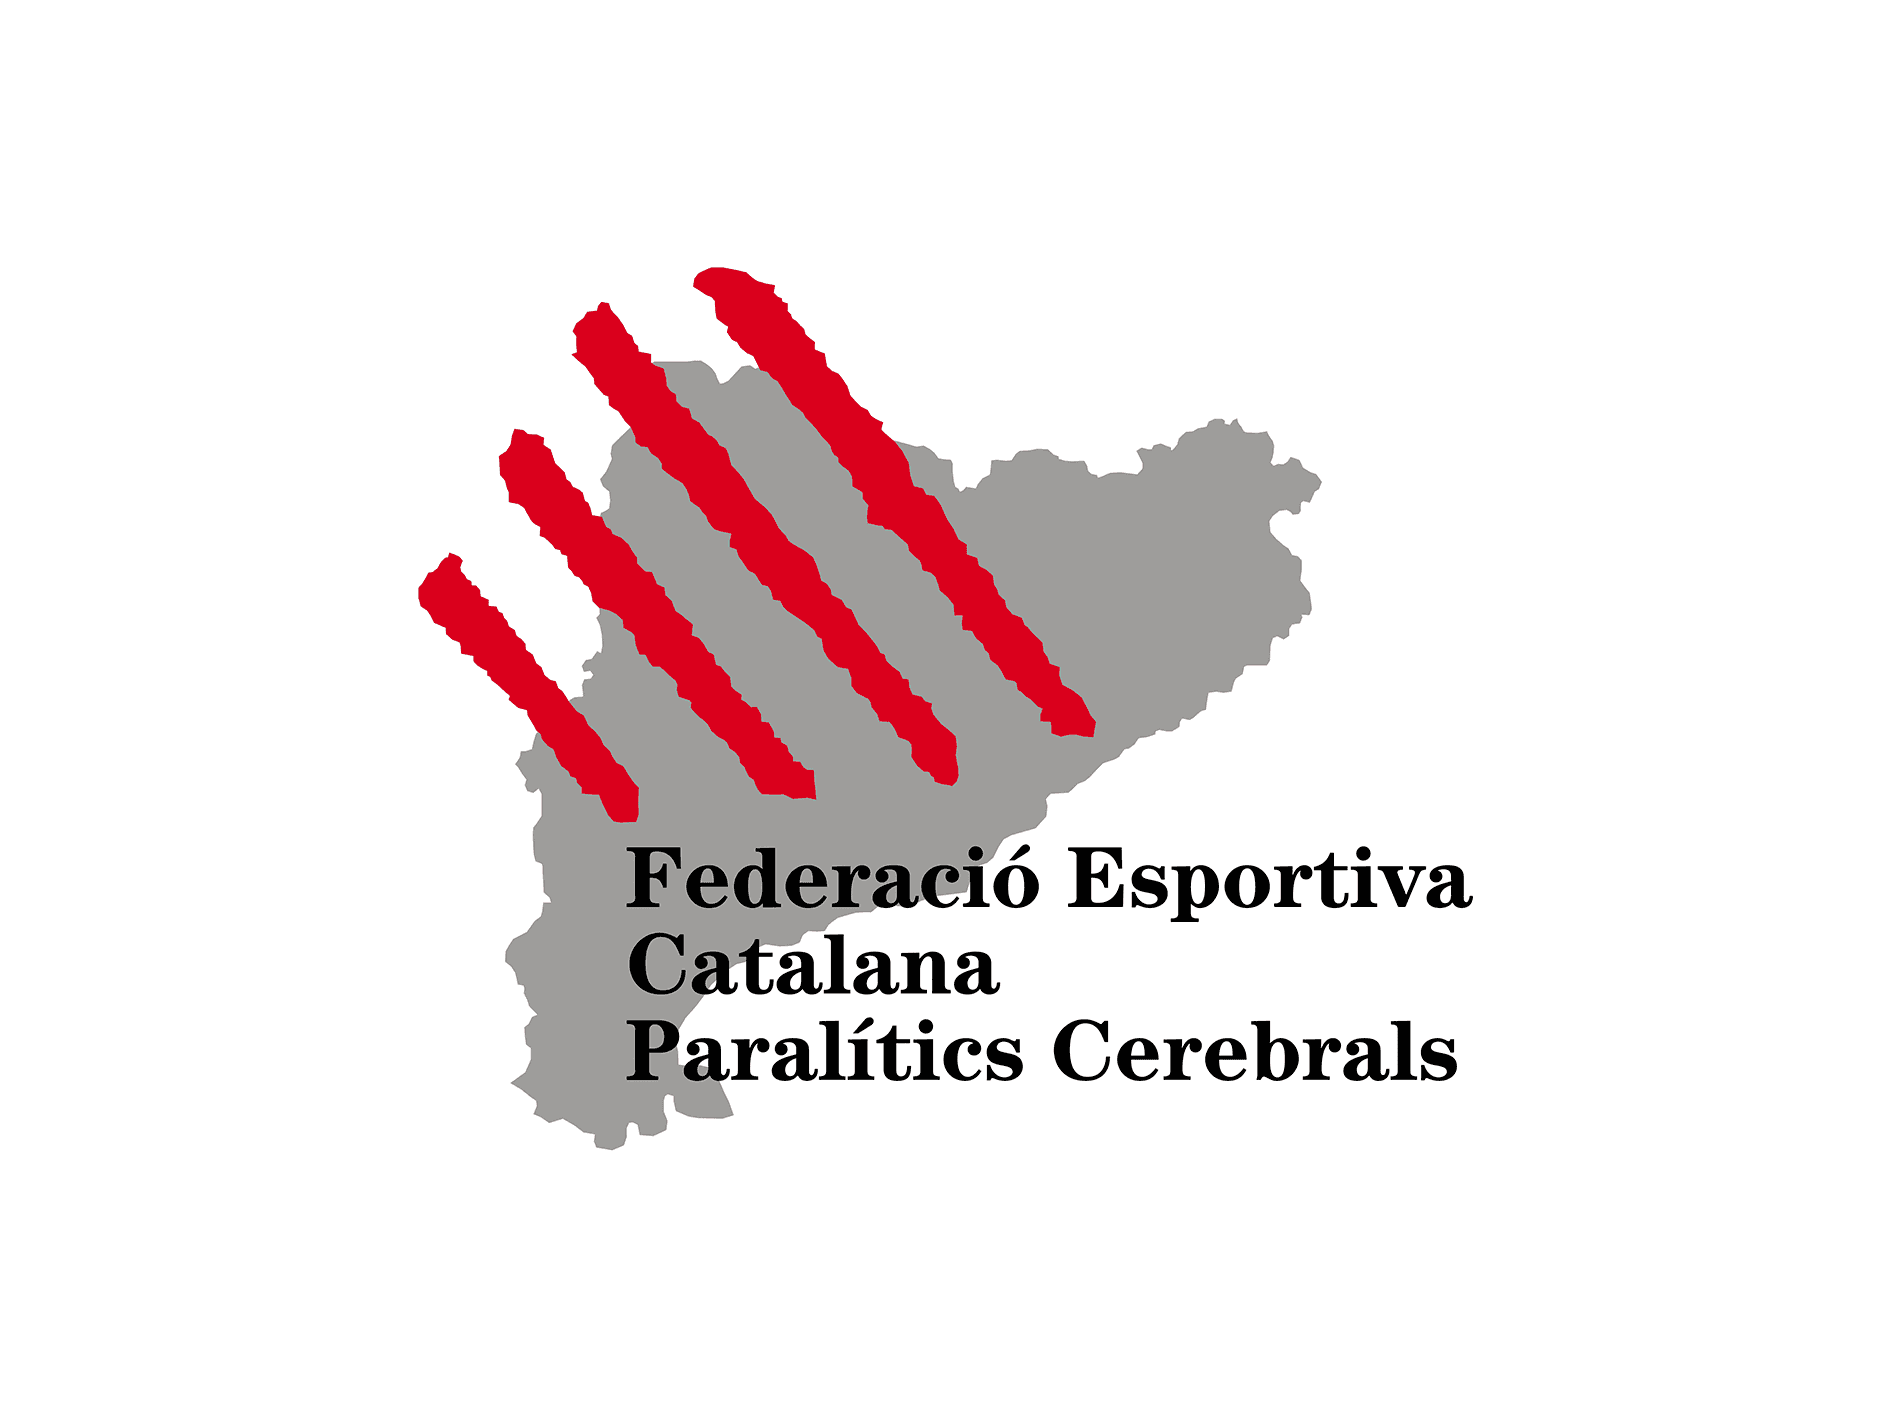 Federació Esportiva Catalana de Paralítics Cerebrals